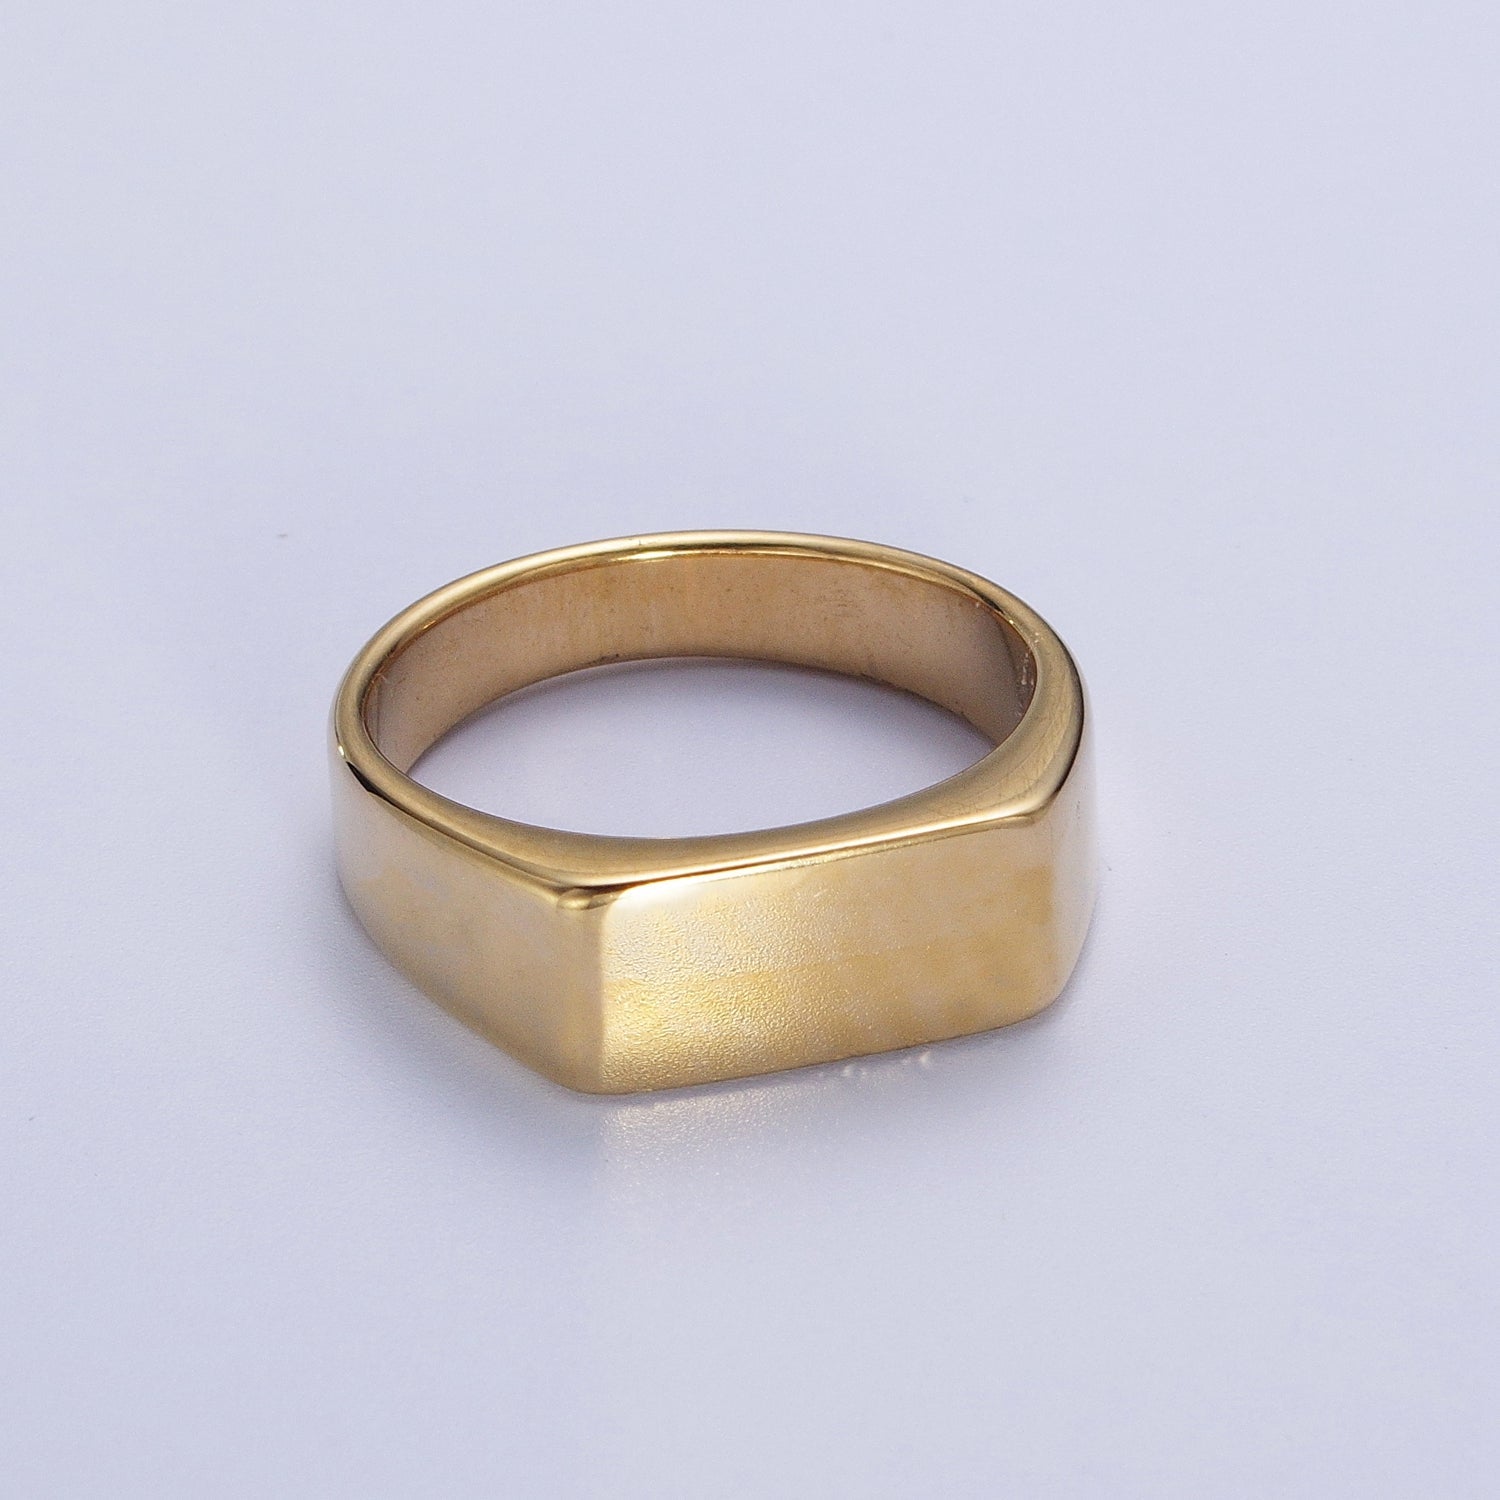 Stainless Steel Rectangular Bar Minimalist Gold, Silver Ring | V079 V080 V081 V082 - DLUXCA